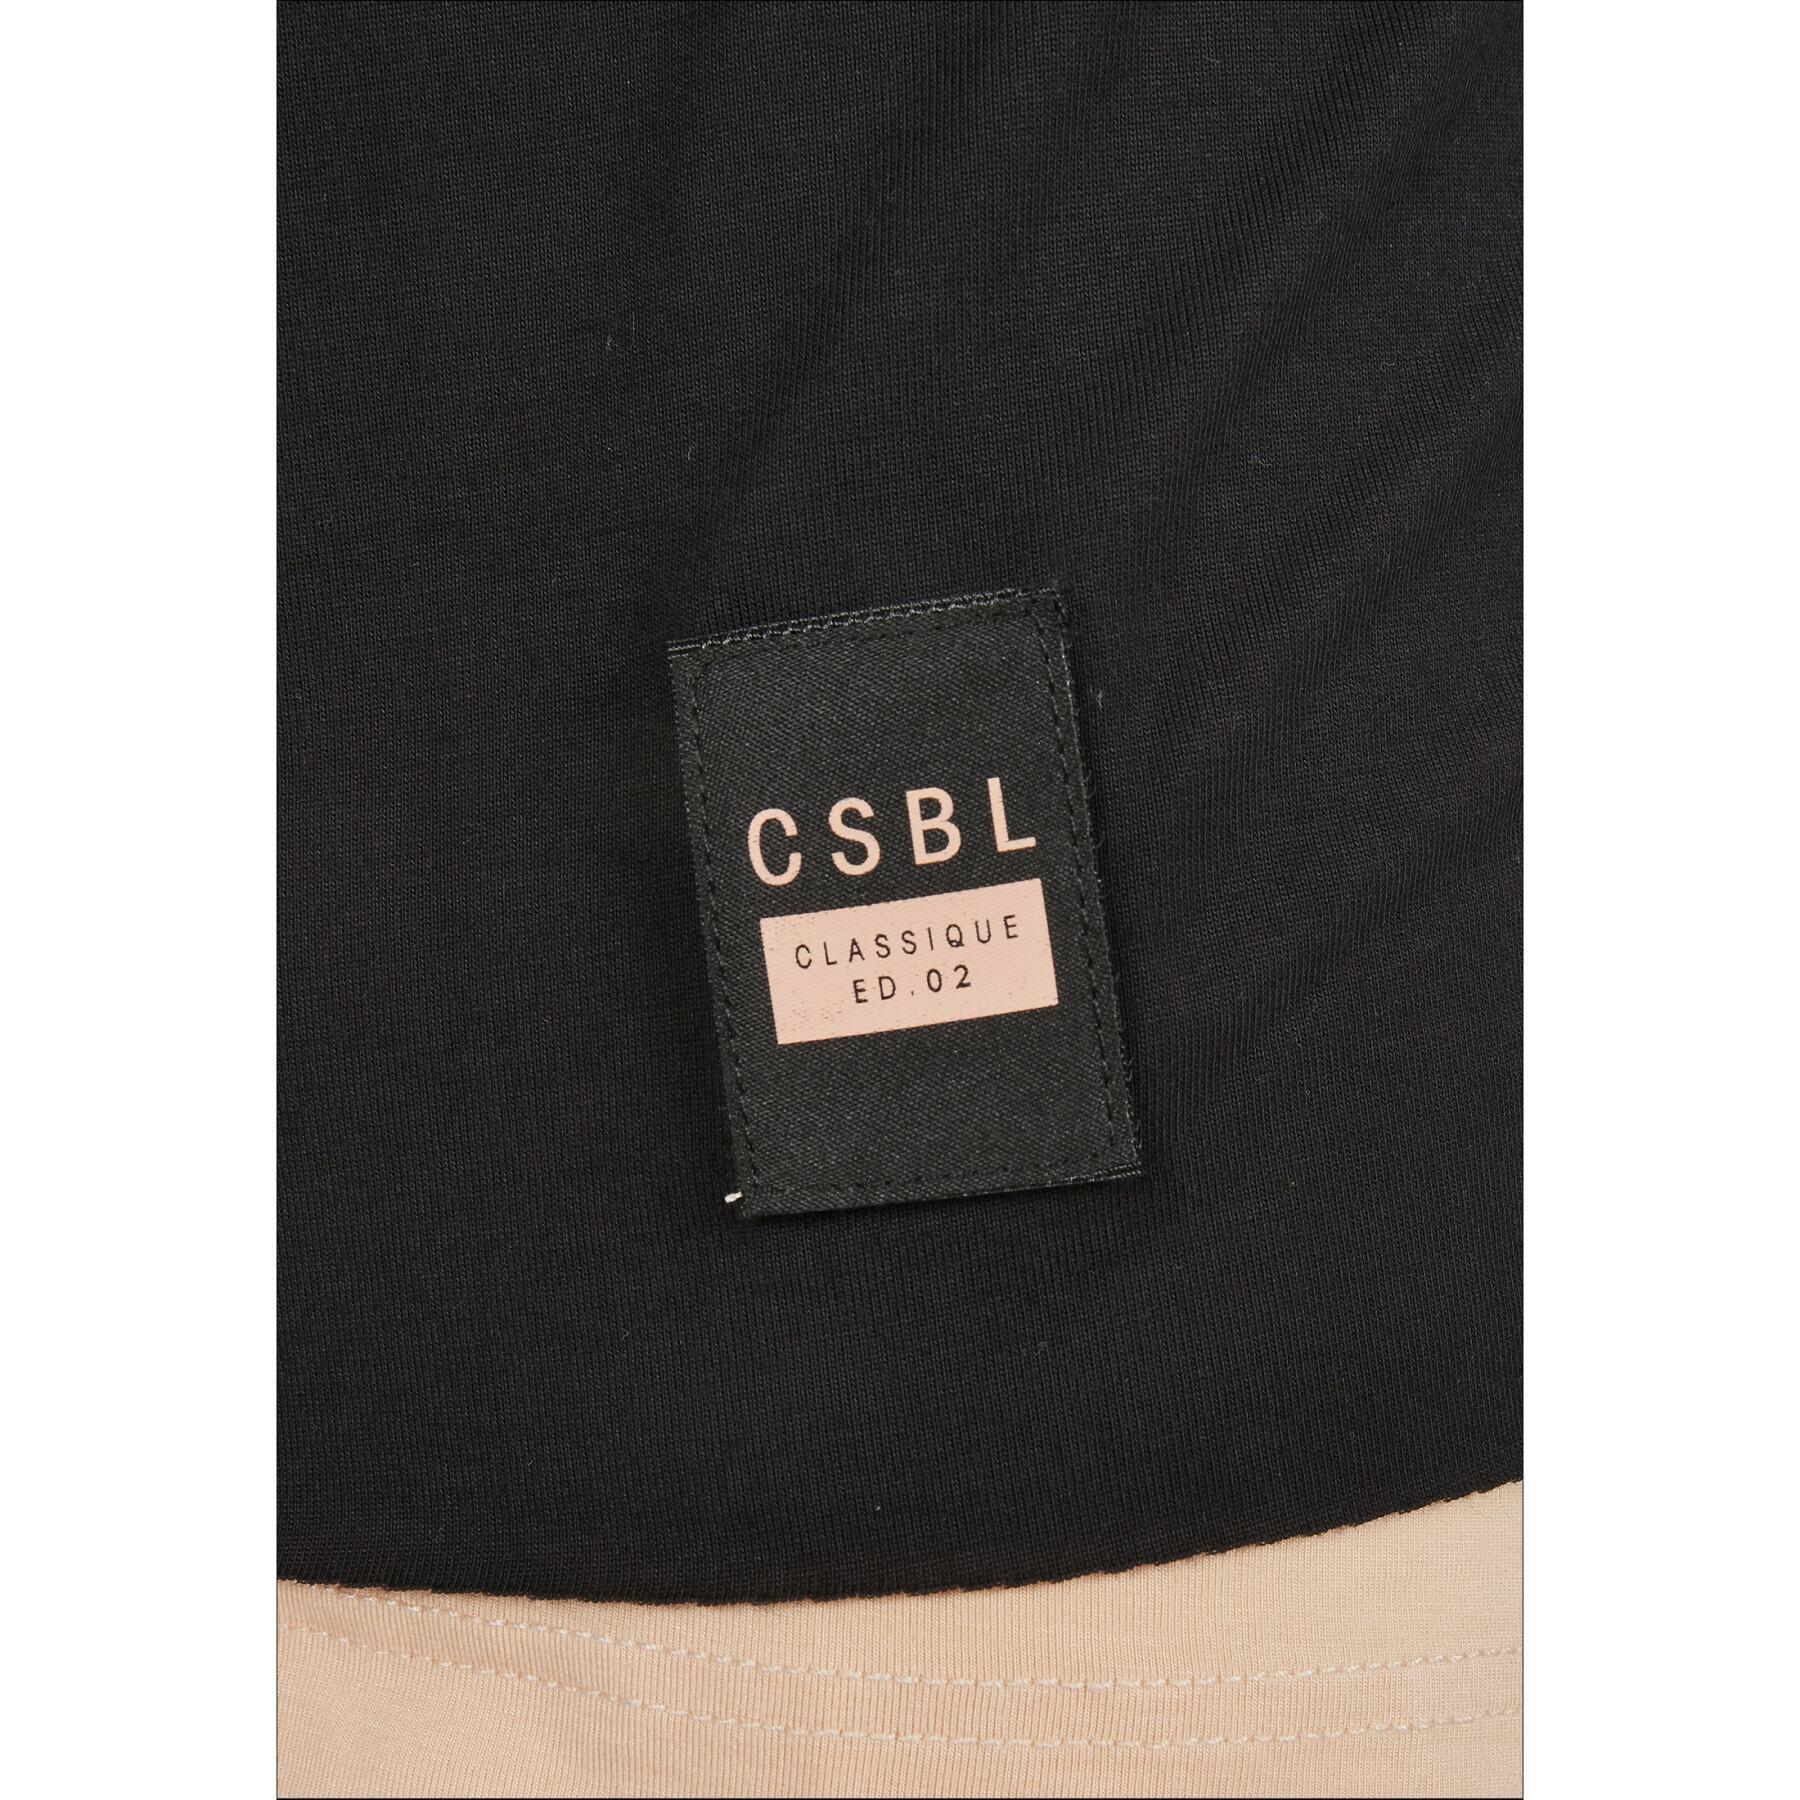 Tjock, lång T-shirt Cayler & Sons CSBL Deuces